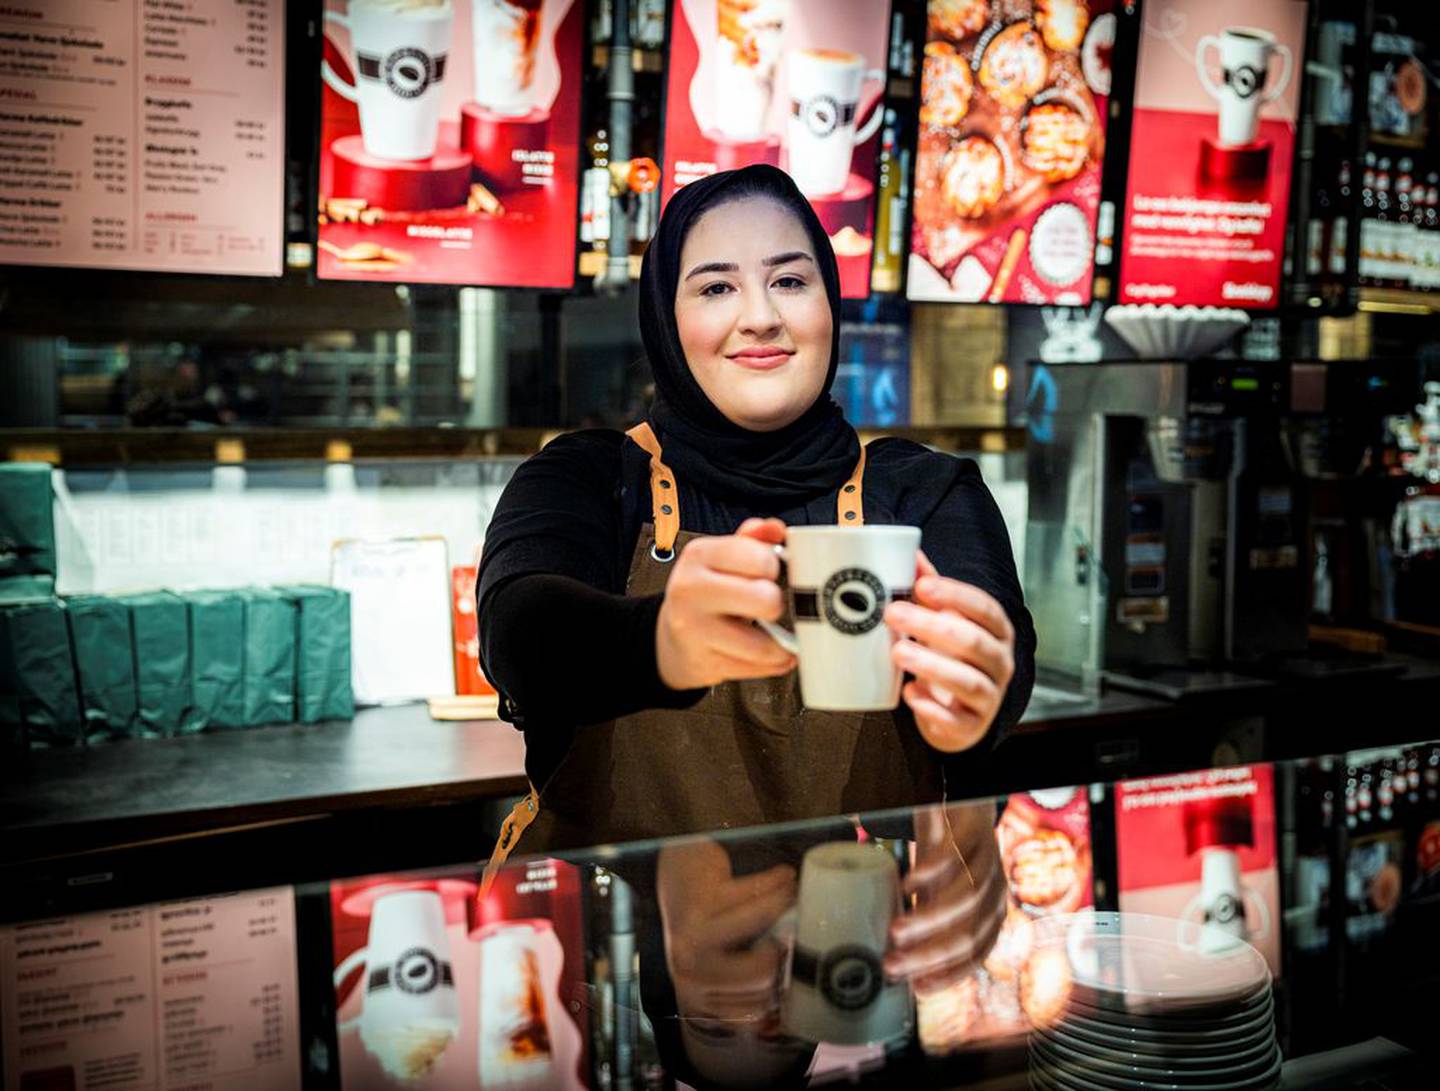 Med over 600 kunder på en vanlig dag, skal Rehana (20) og kollegaene servere mange kopper kaffe og smil hvert eneste skift.

Foto: Tormod Ytrehus/FriFagbevegelse